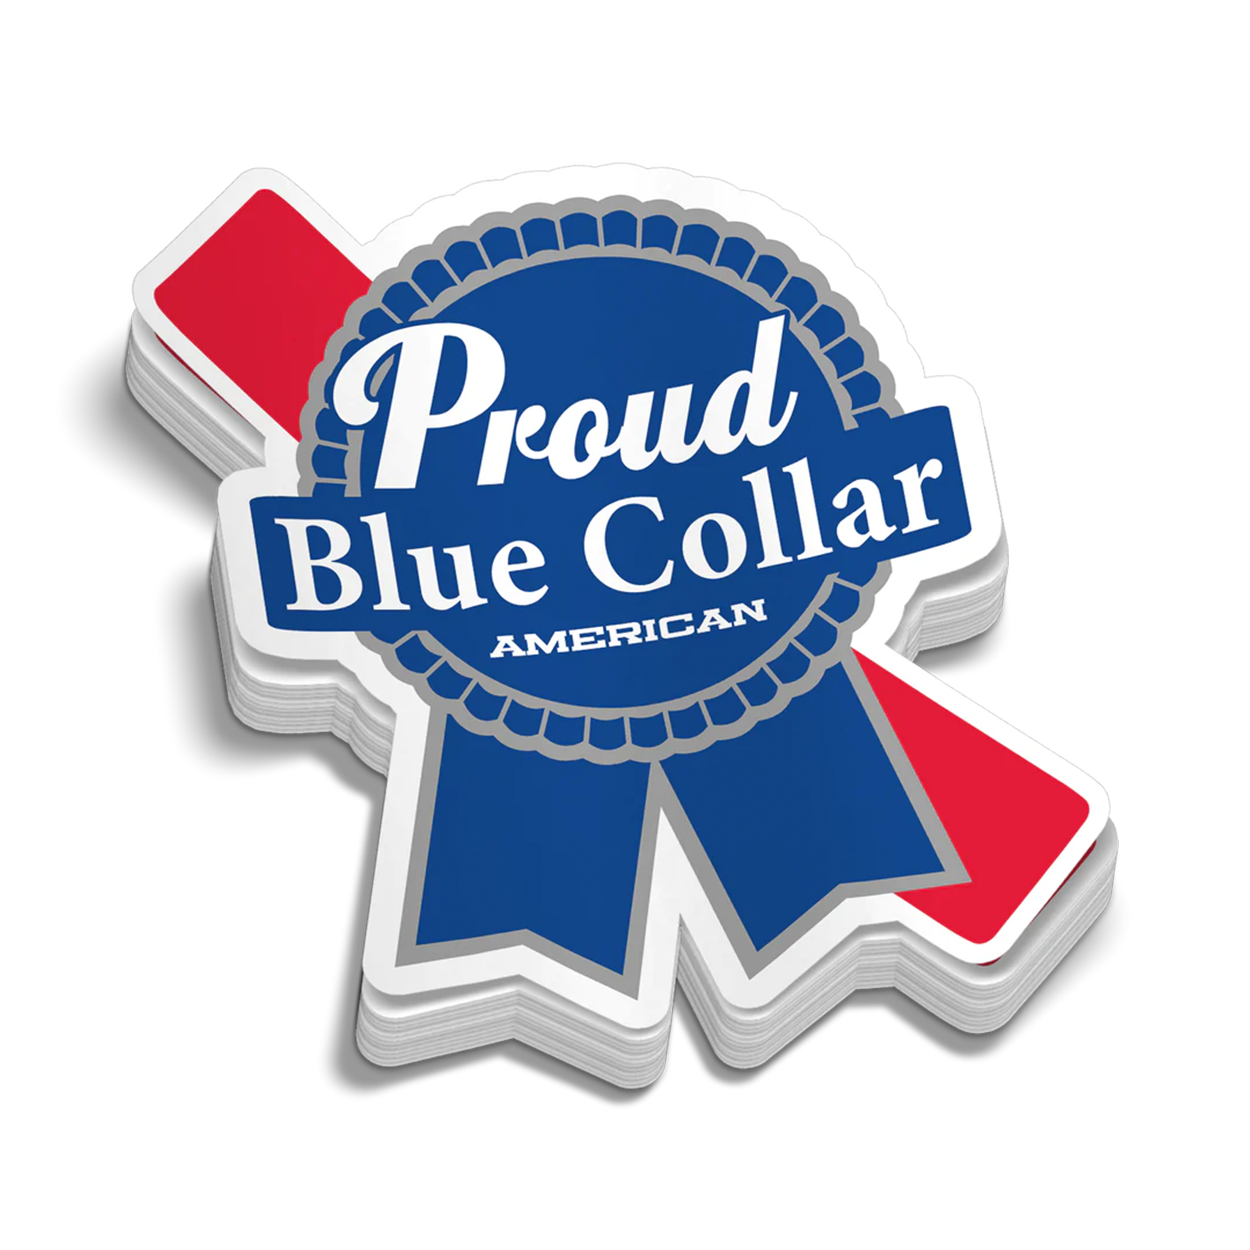 170 Blue Collar Sticker Collection ideas  sticker collection, hard hat  stickers, helmet stickers